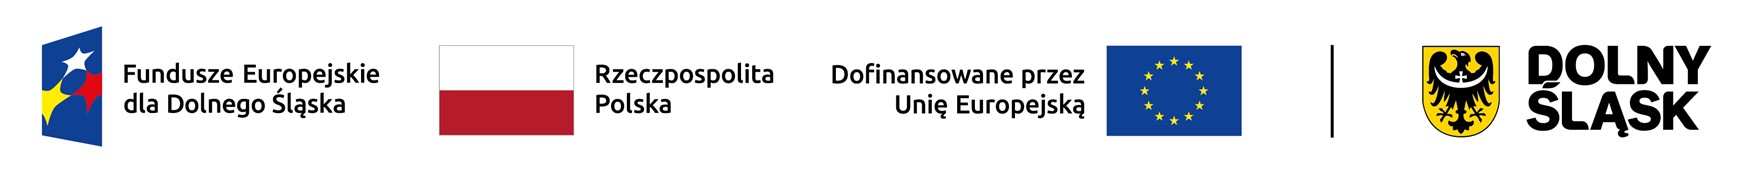 Loga: Funduszy Europejskich, barwy RP, dofinansowano ze środków UE, Dolny Śląsk